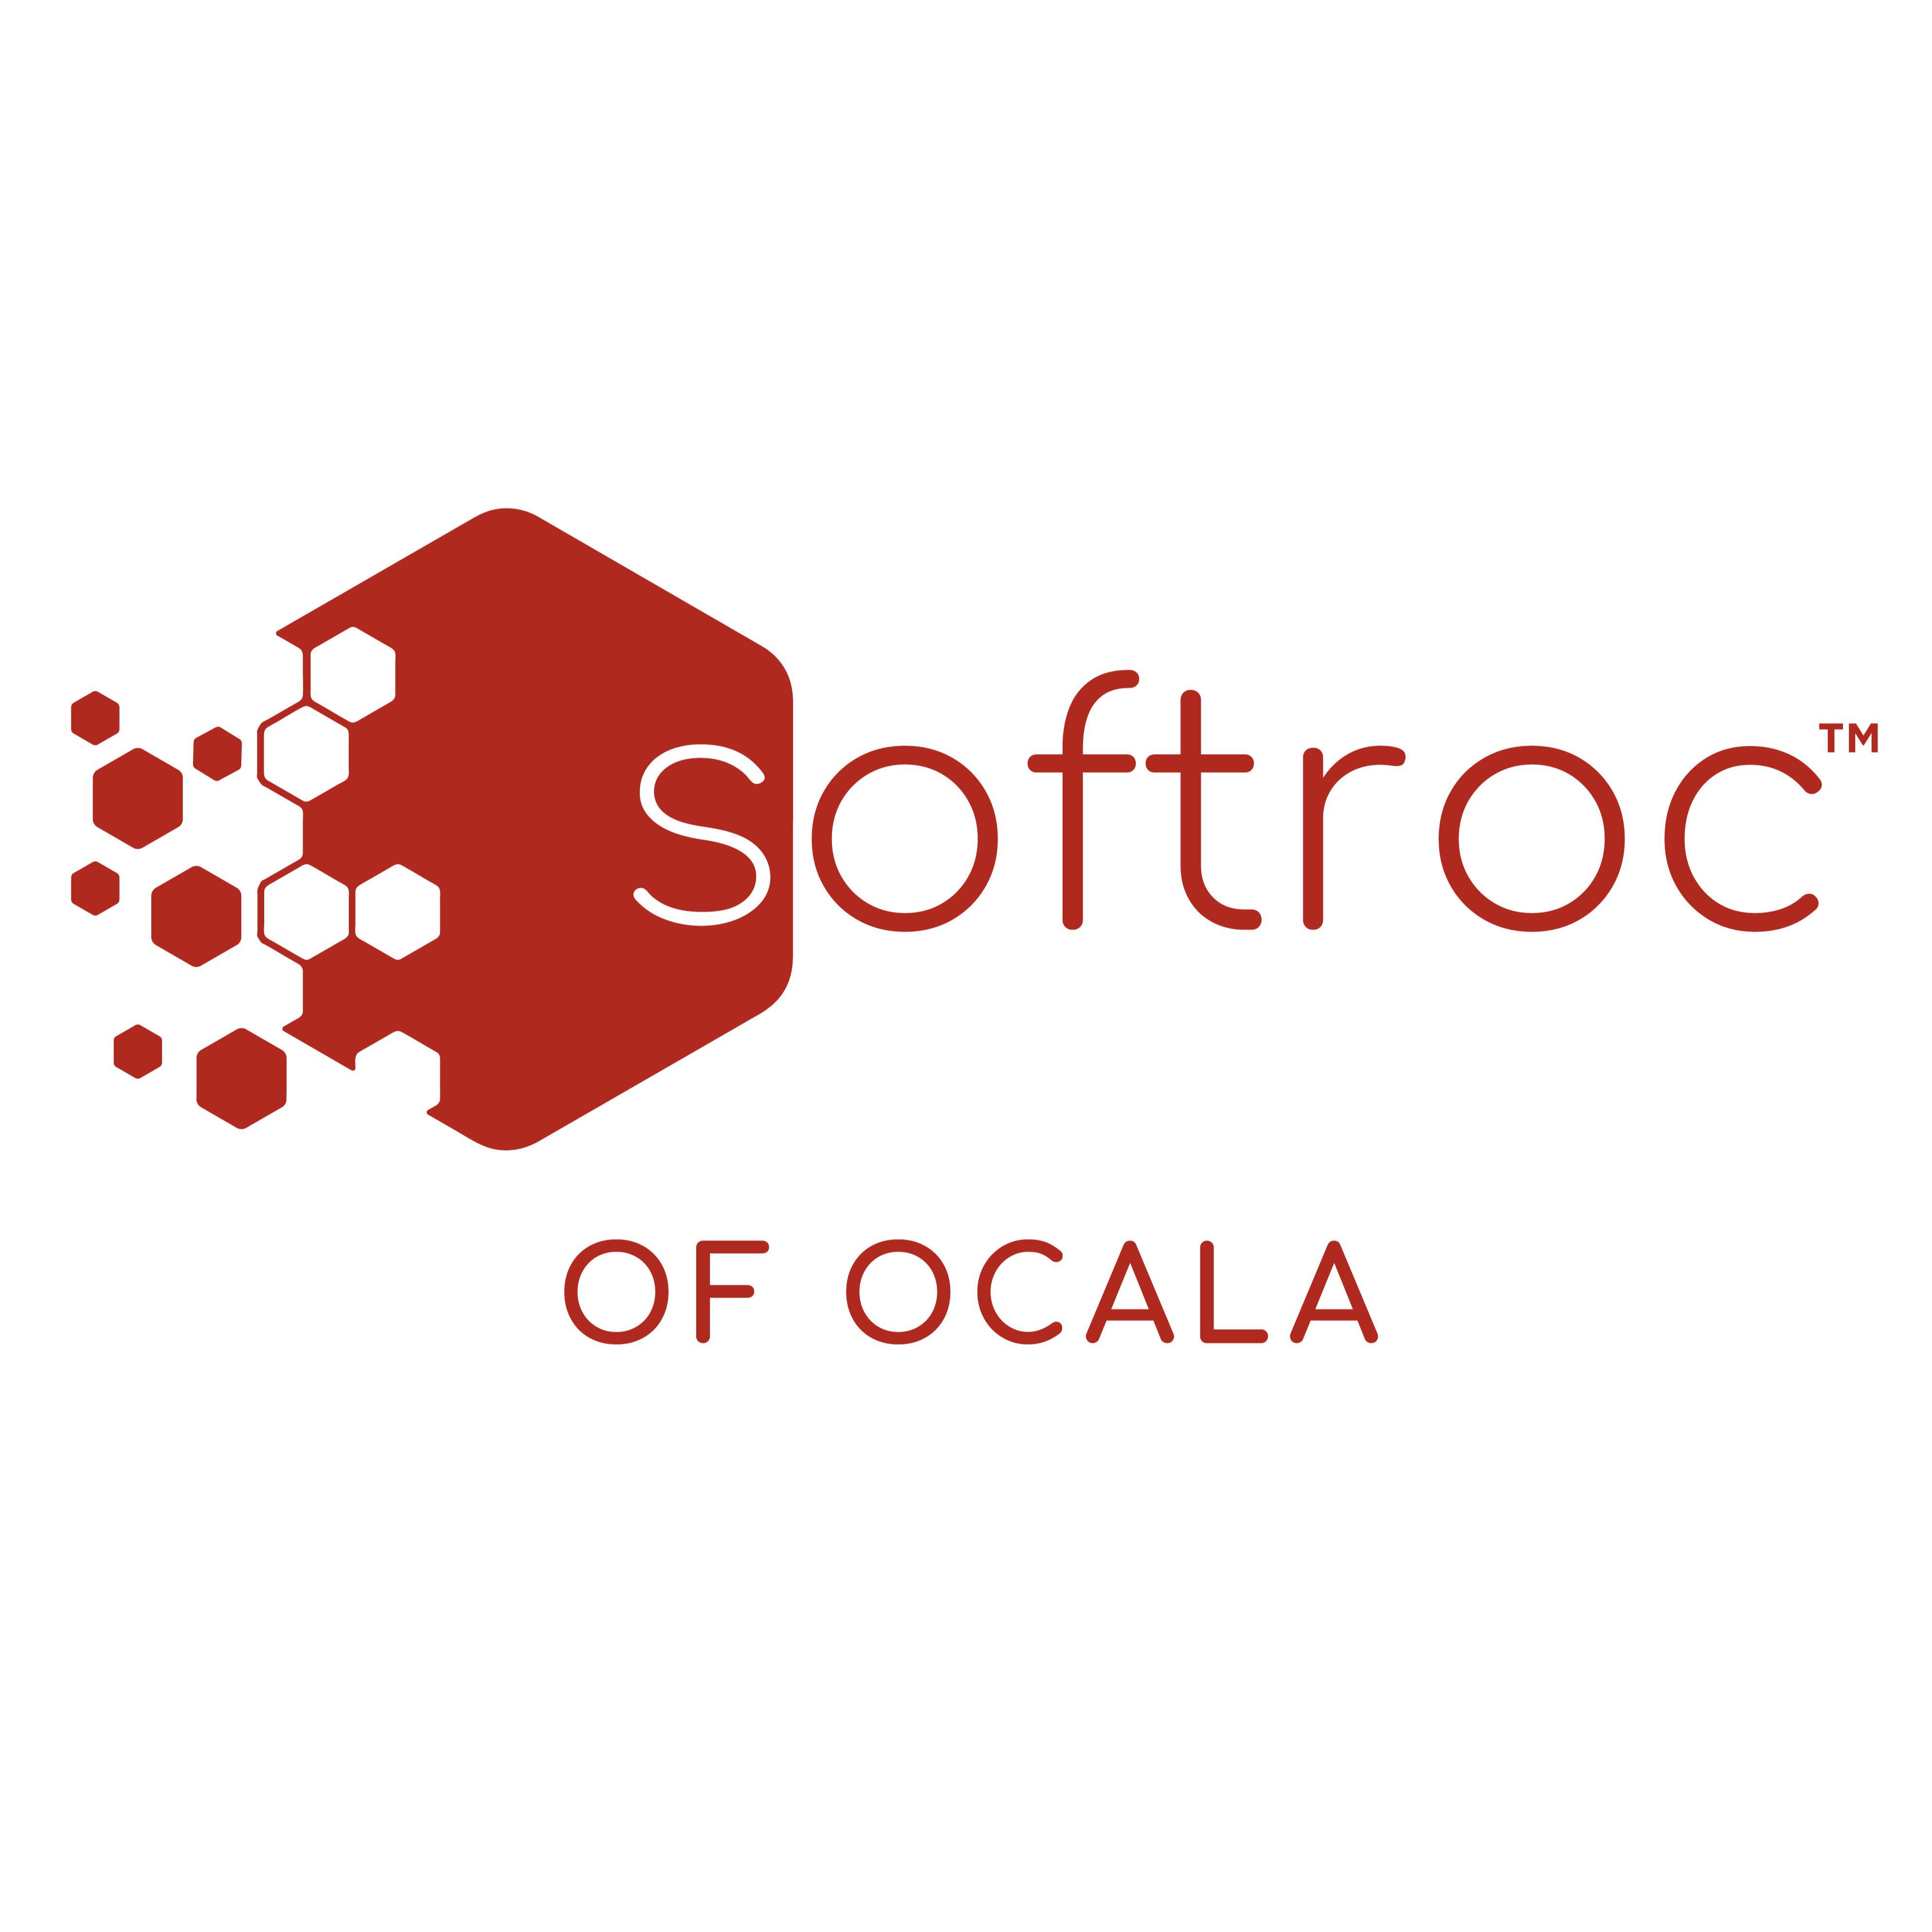 Softroc of Ocala